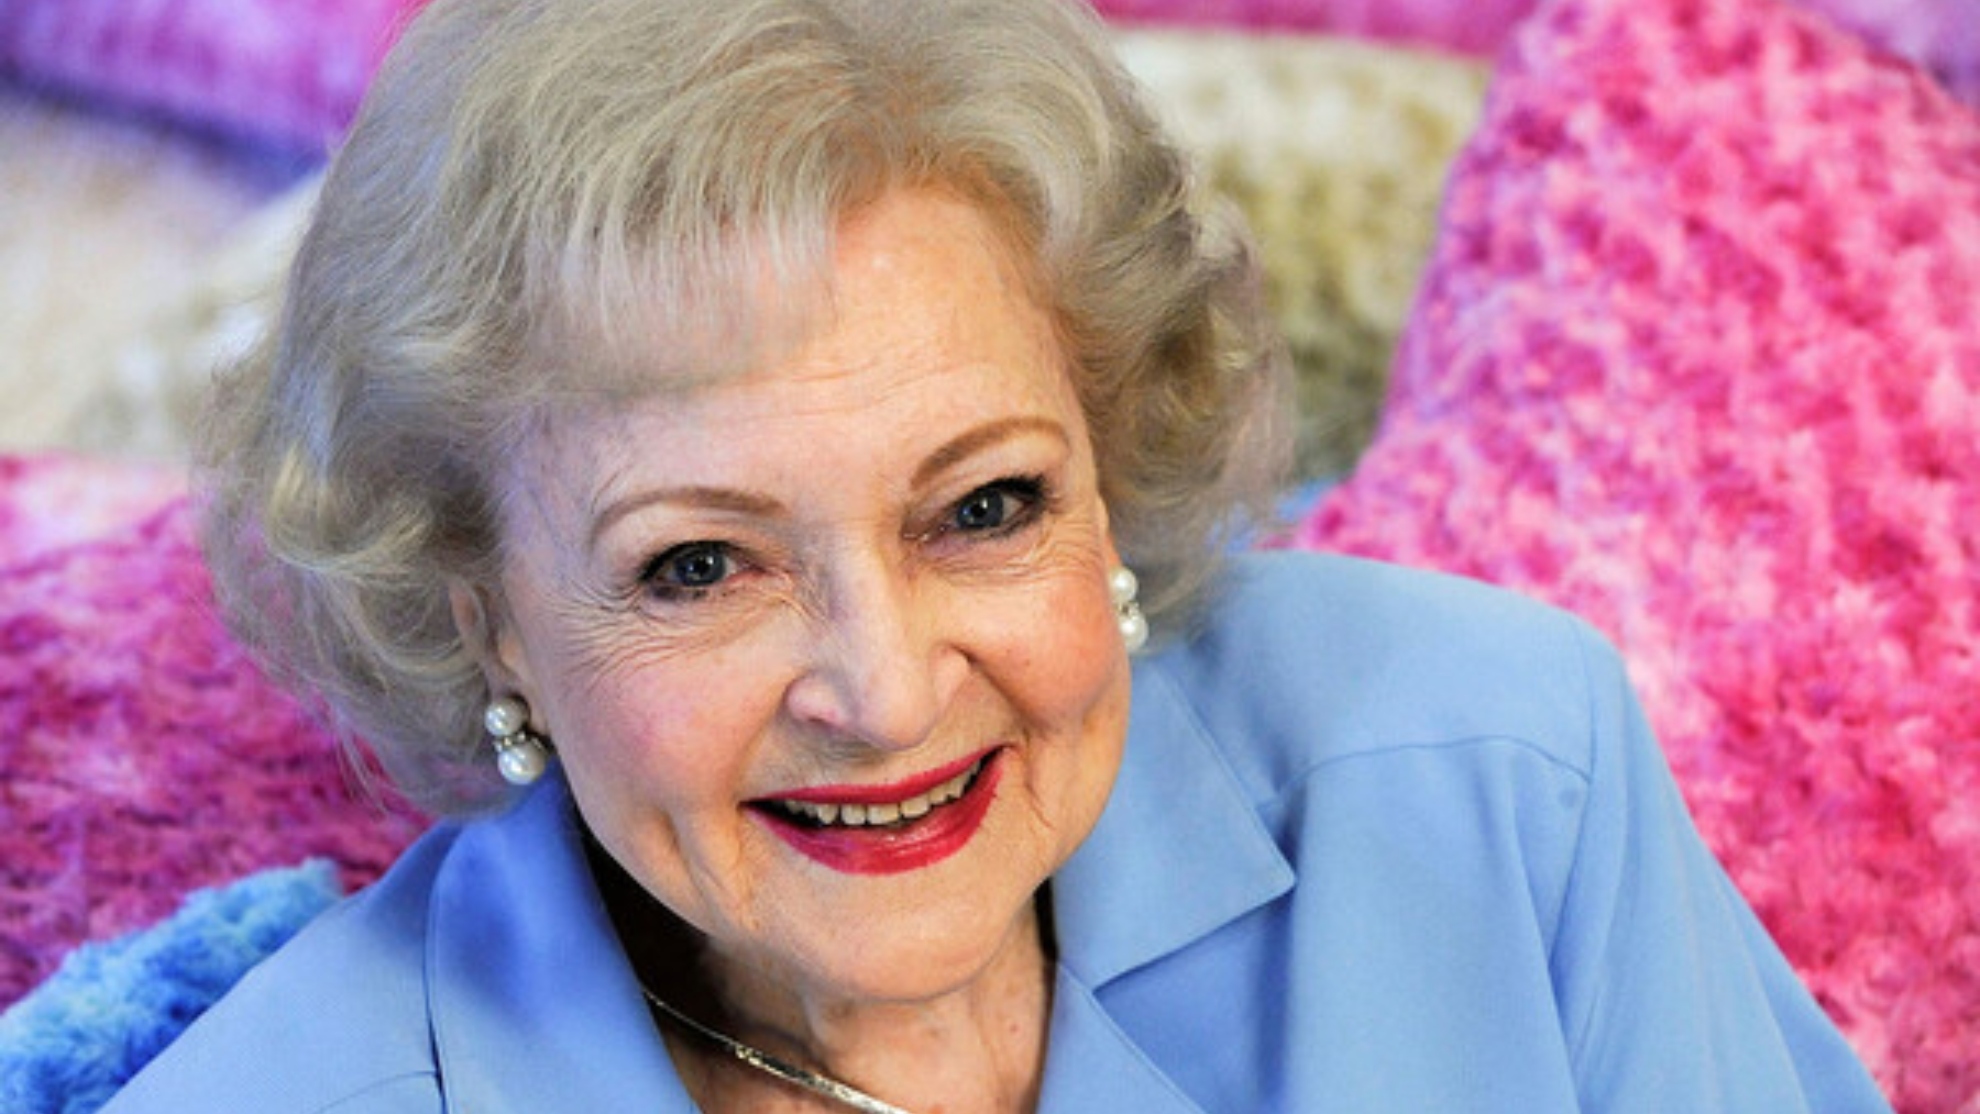 muere la actriz y comediante betty white a los 99 anos laverdaddemonagas.com 16410581323200